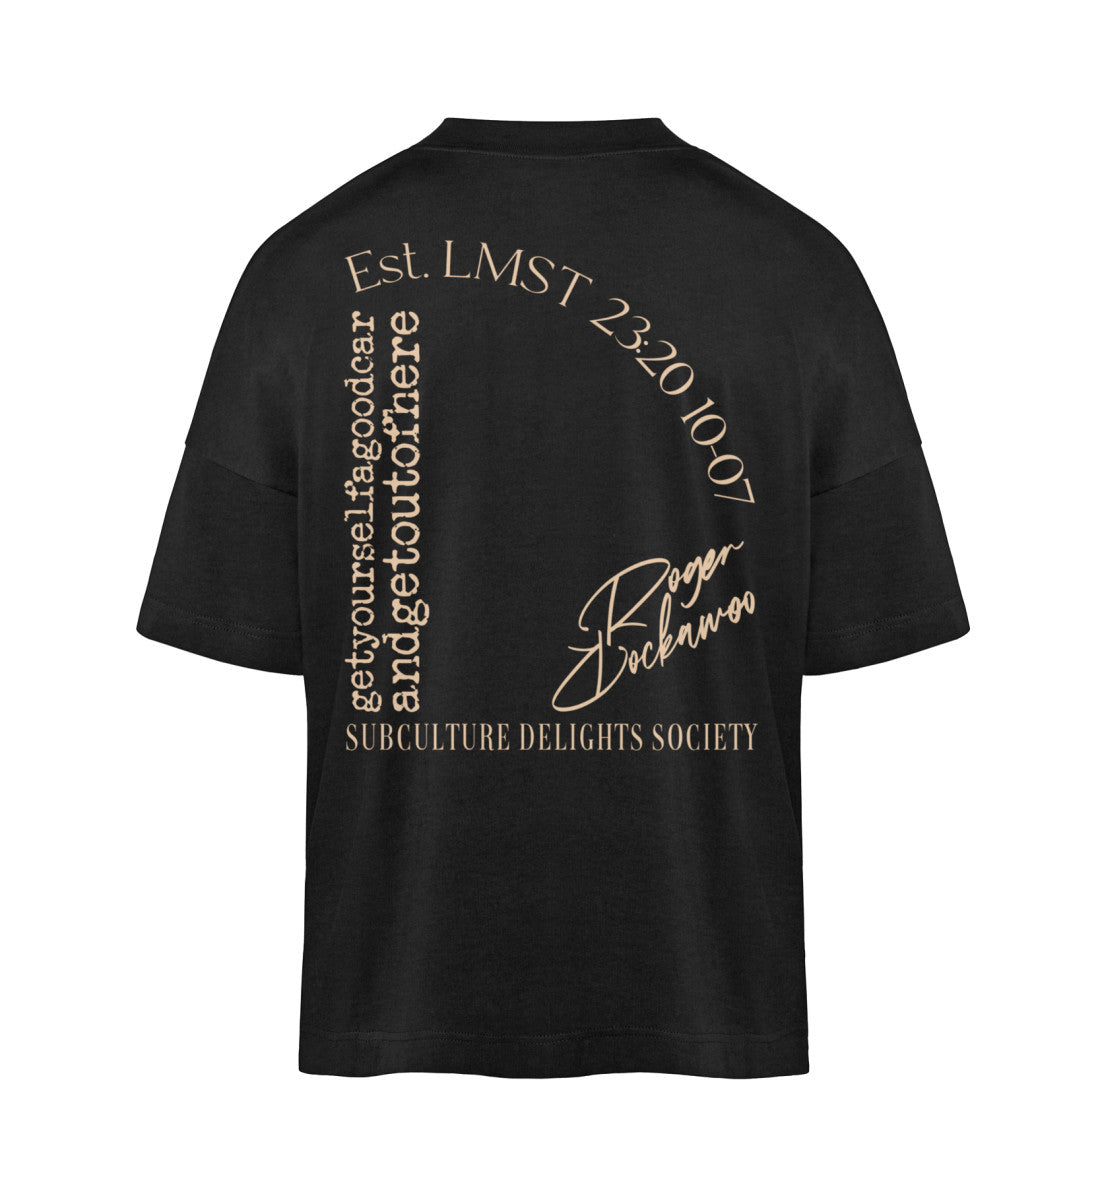 Schwarzes T-Shirt im Unisex Oversize Fit für Frauen und Männer bedruckt mit dem Design der Roger Rockawoo Kollektion get yourself a good car